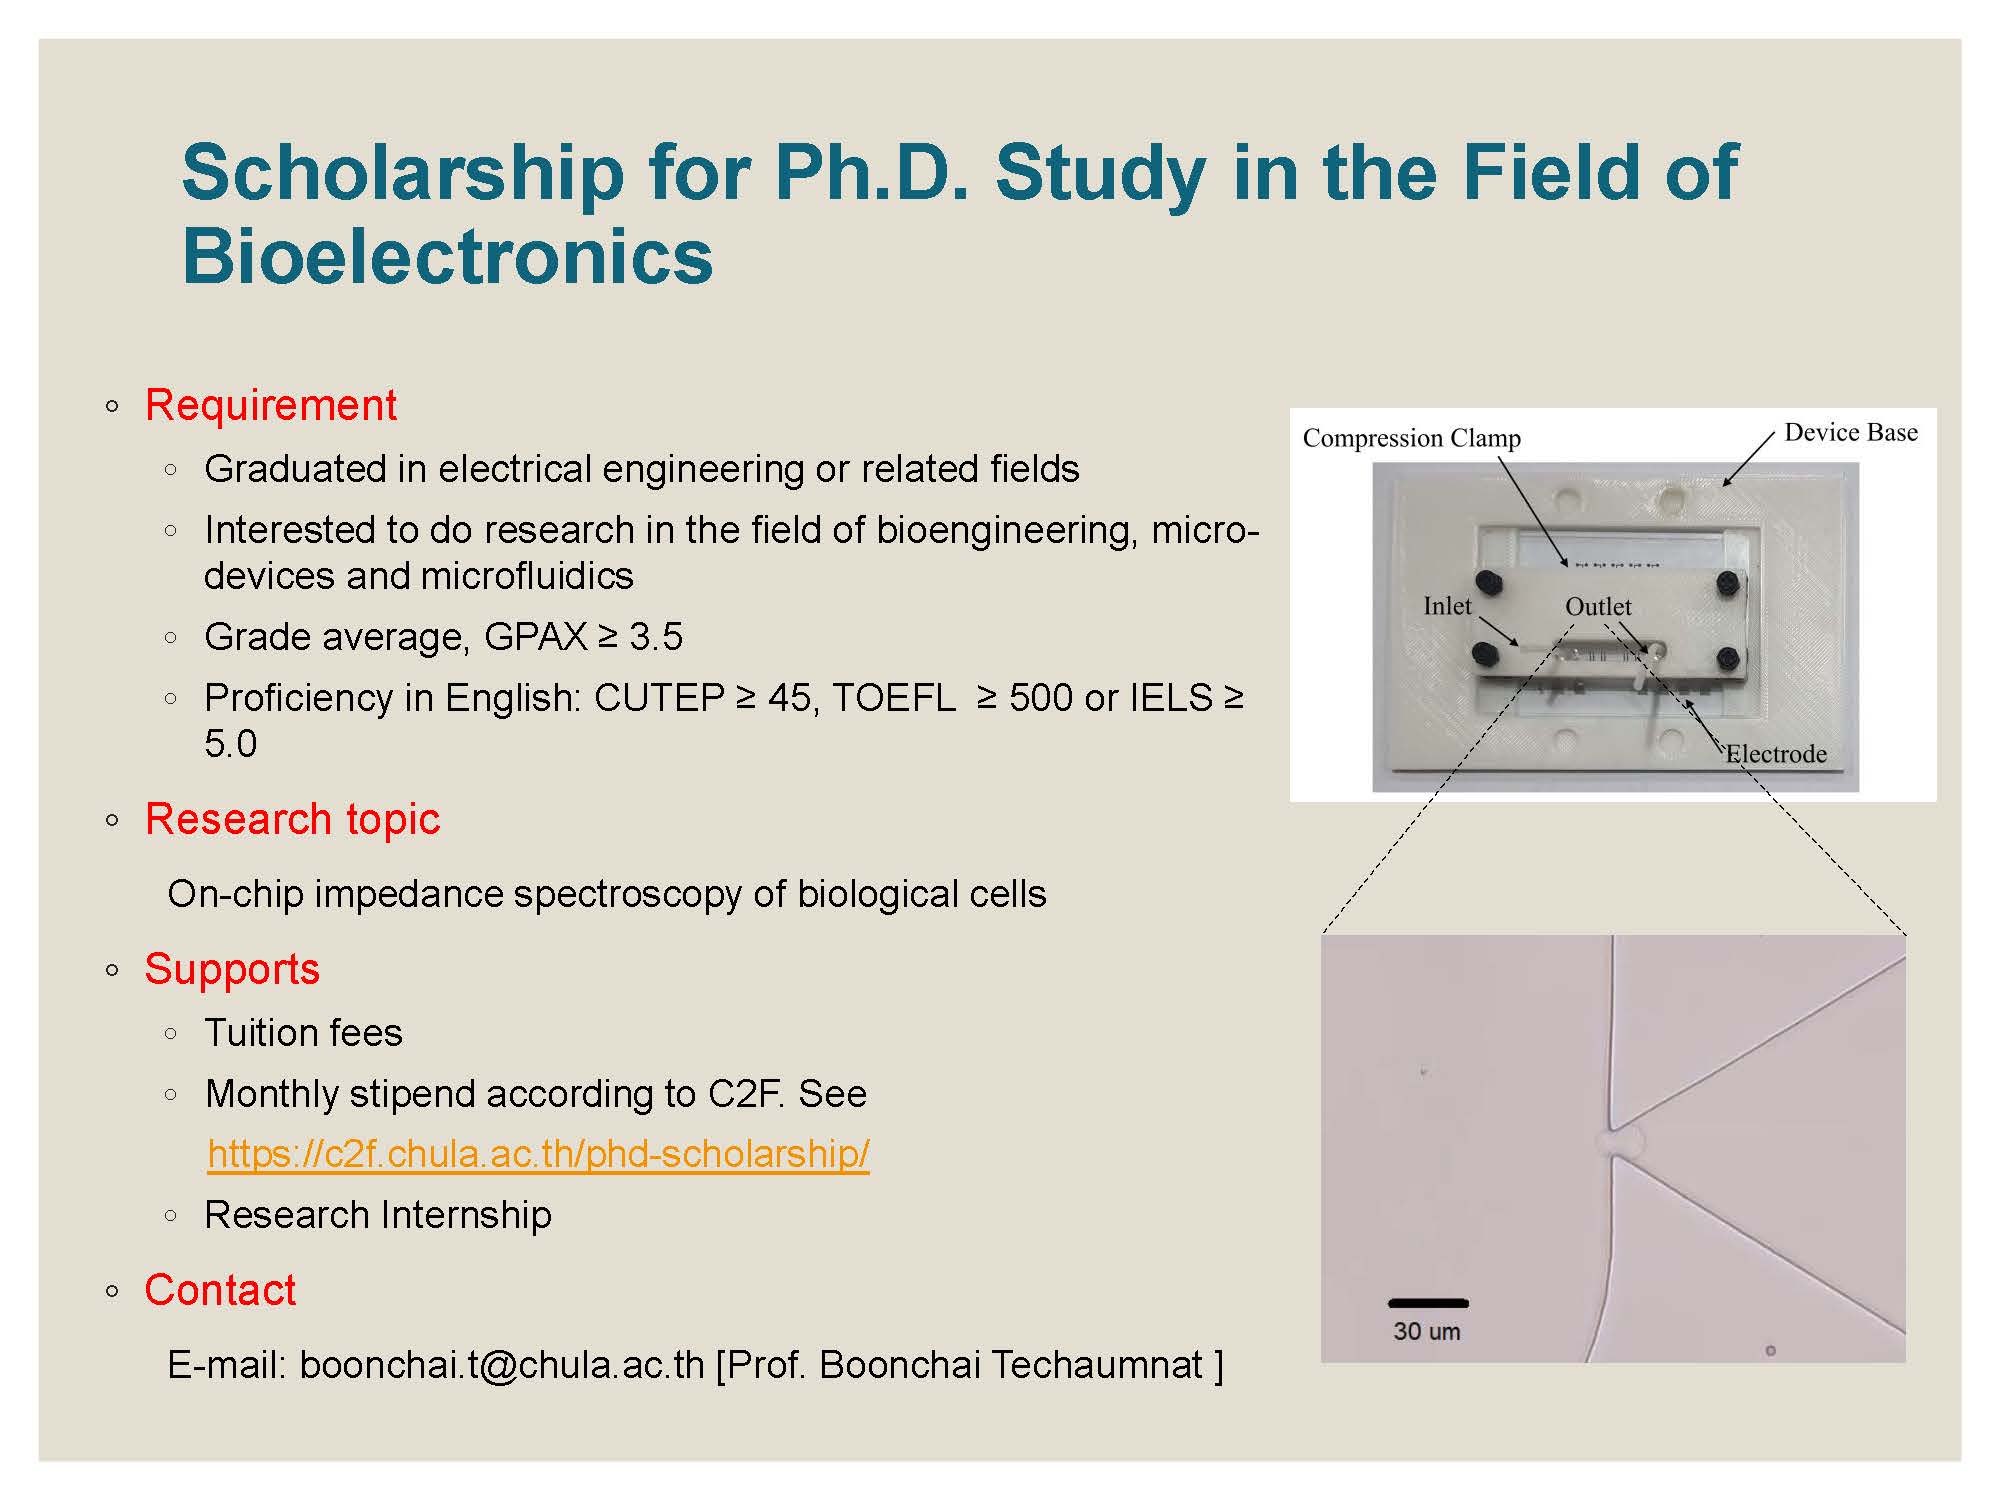 ทุนสำหรับผู้สนใจศึกษาต่อในระดับปริญญาโท-เอก ในกลุ่มวิจัย Bioelectronics